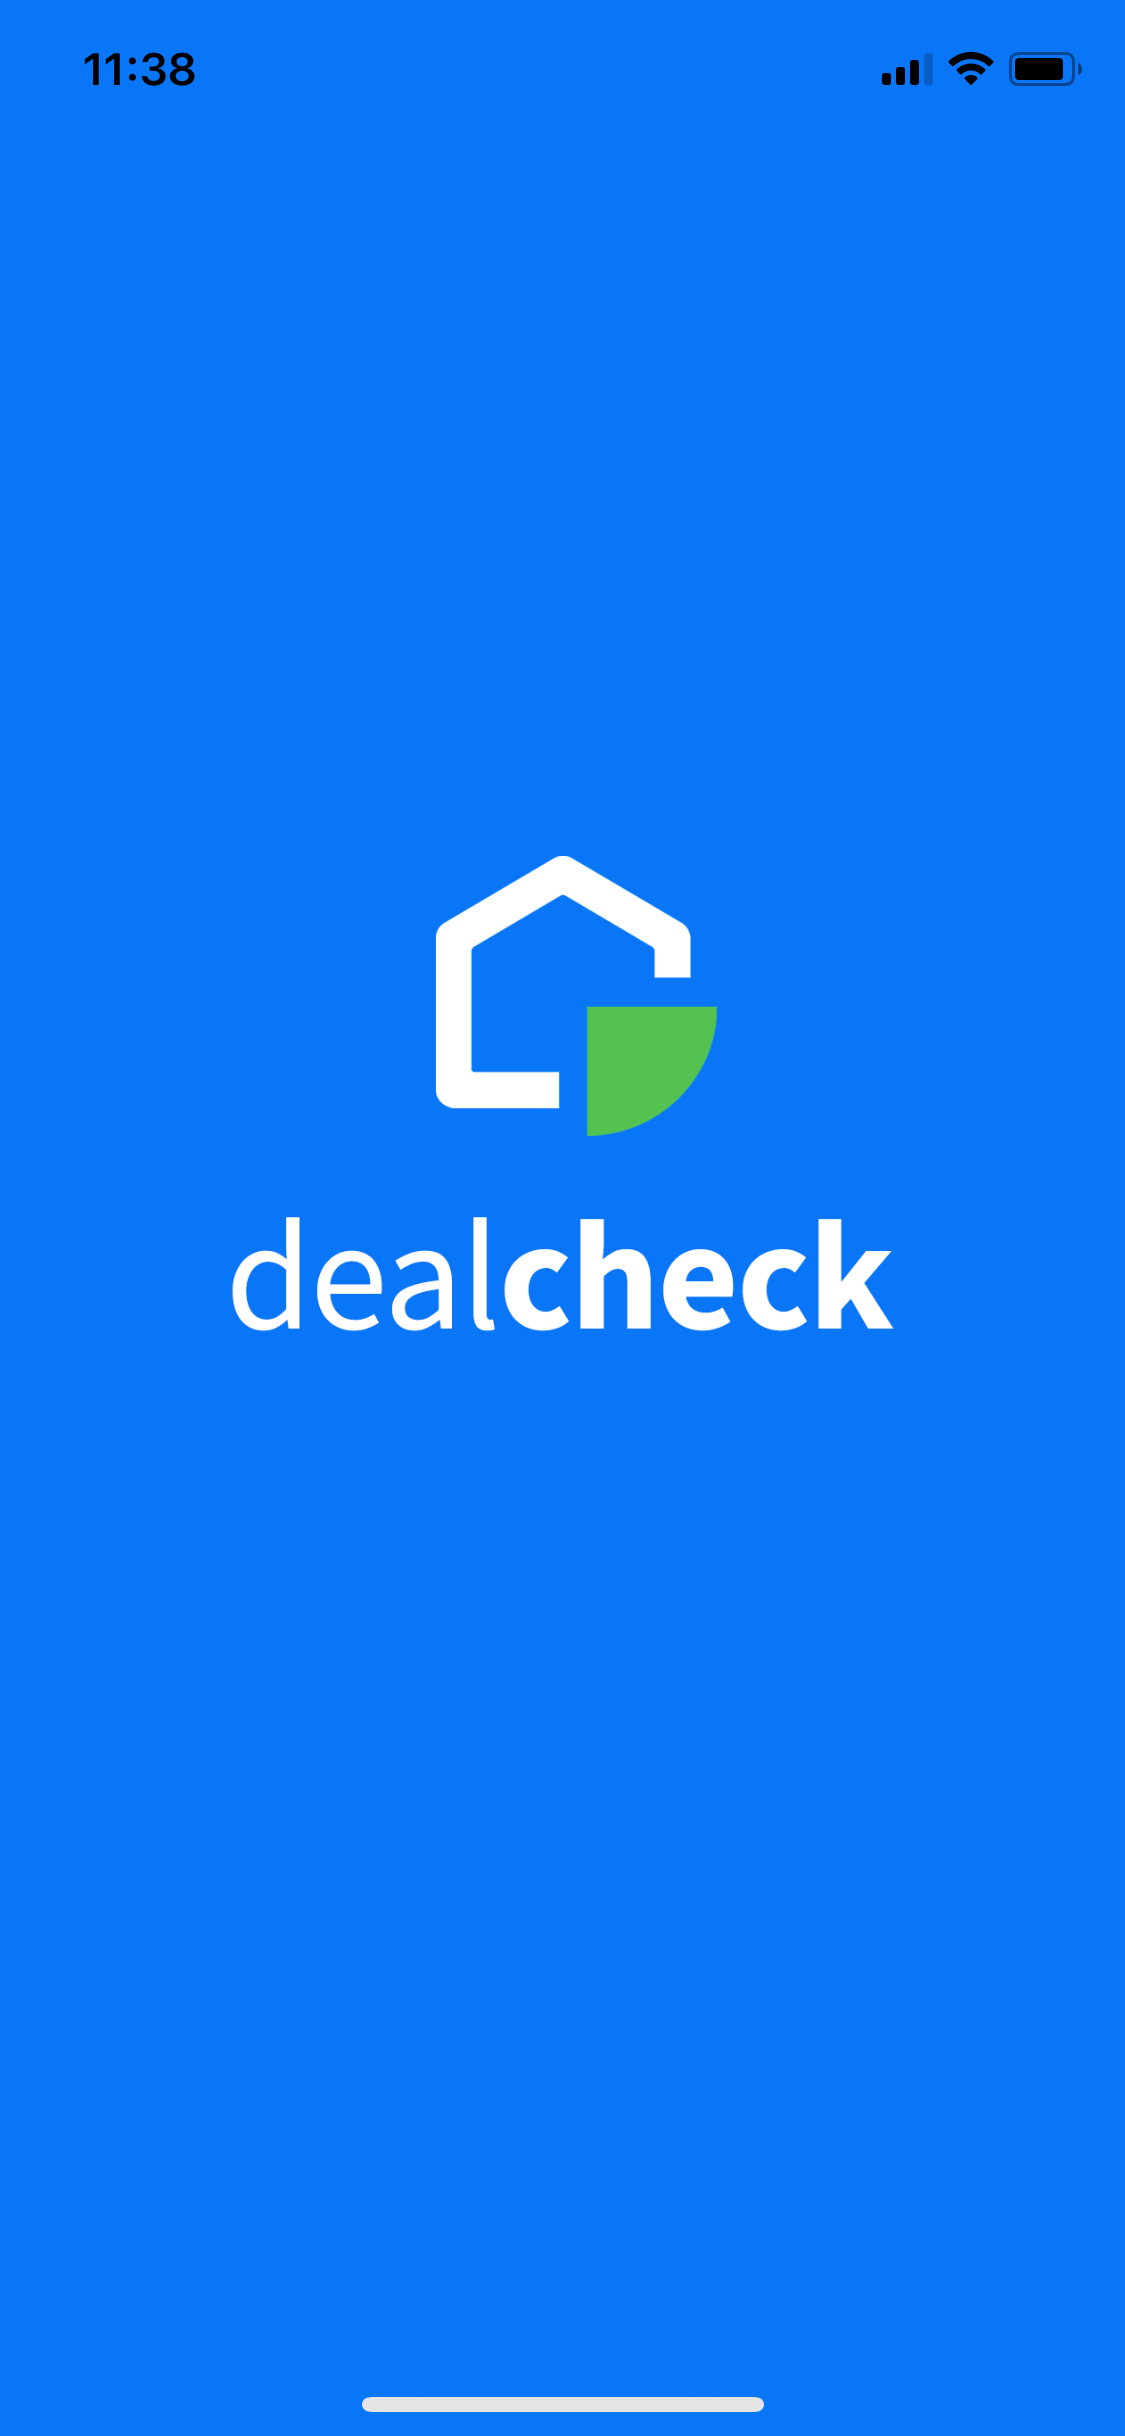 dealcheck logo